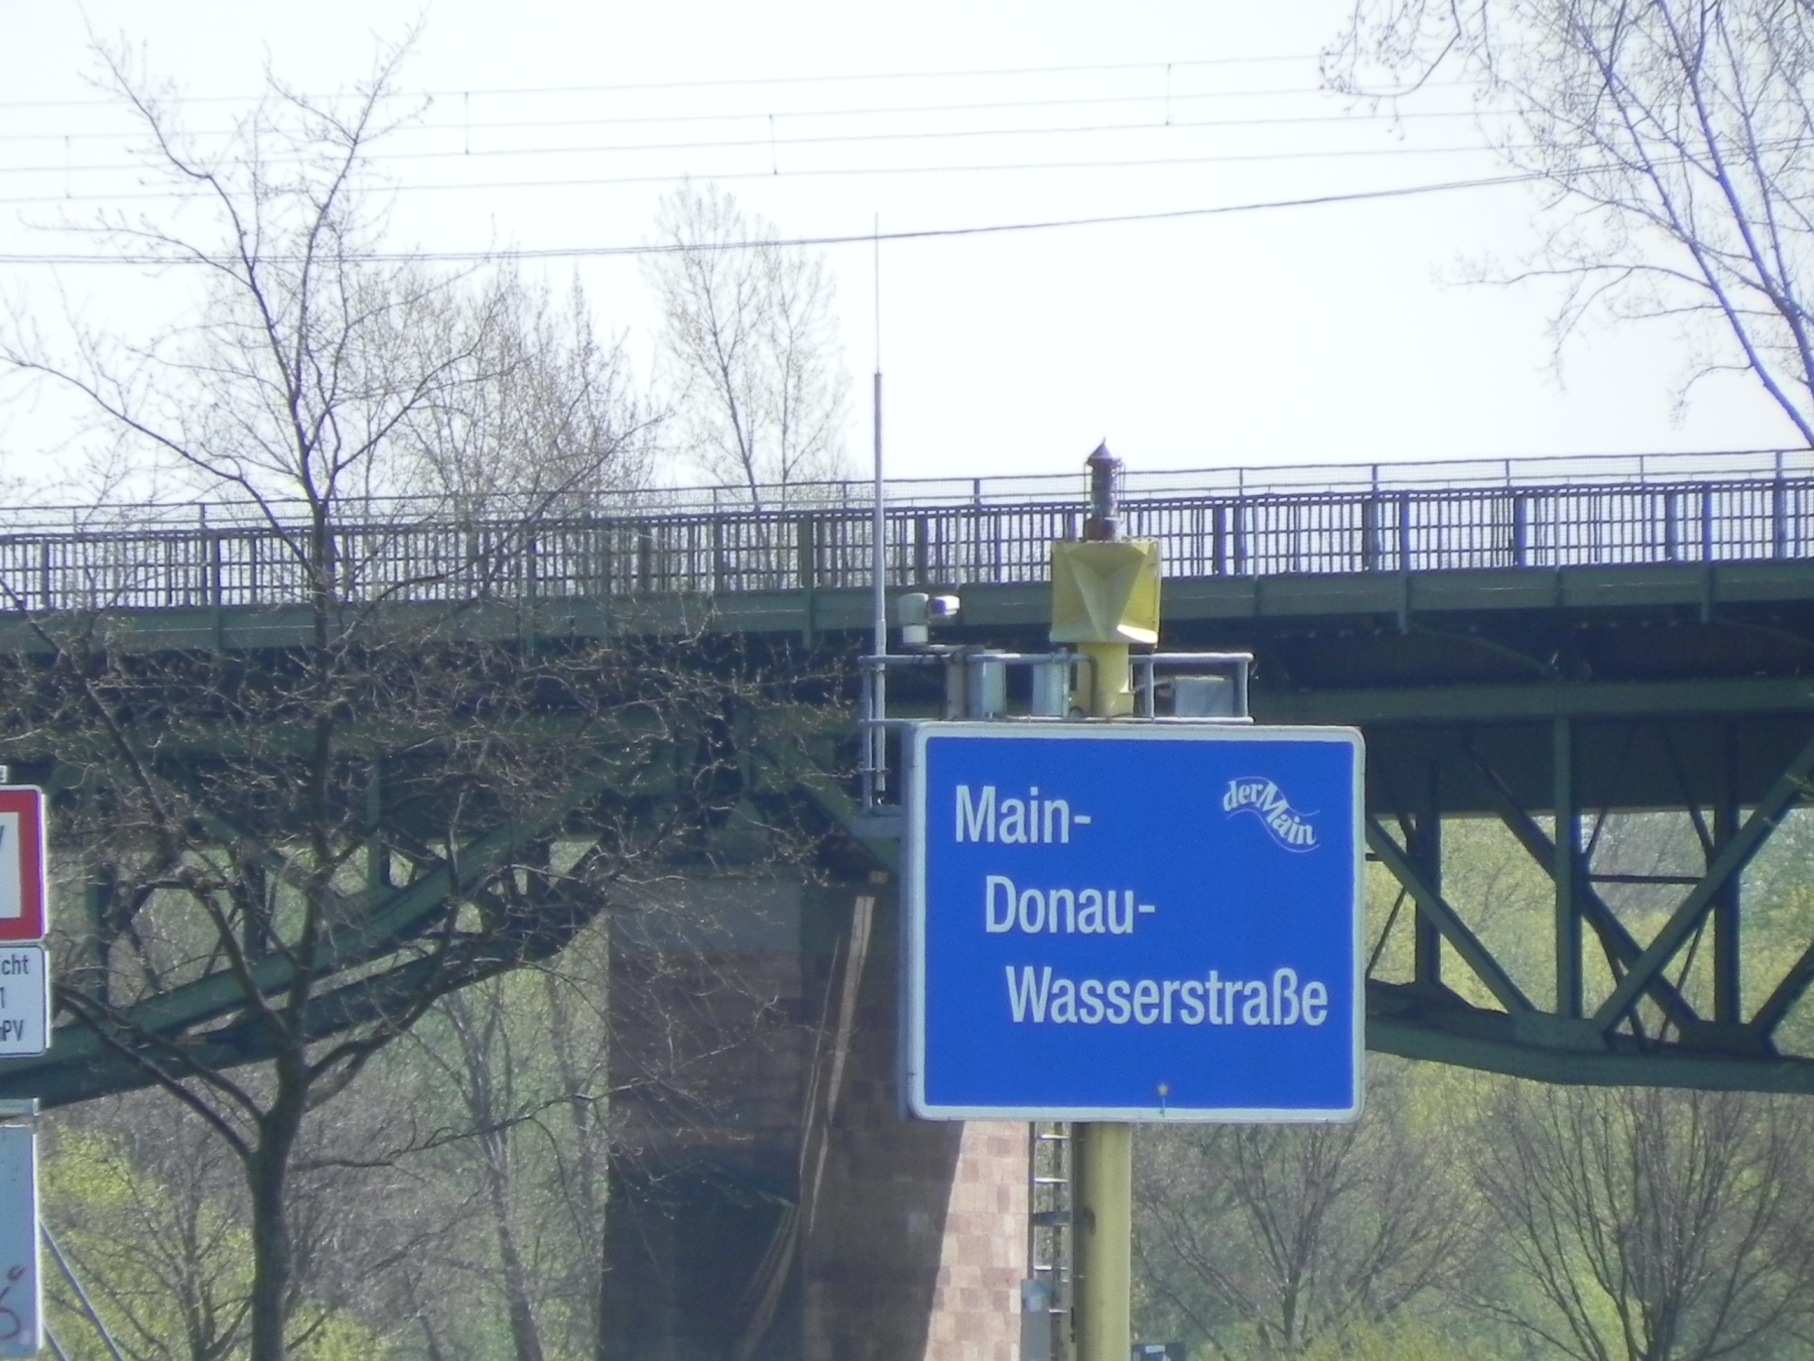 20150404029 Main Donau Wasserstrasse Kopie